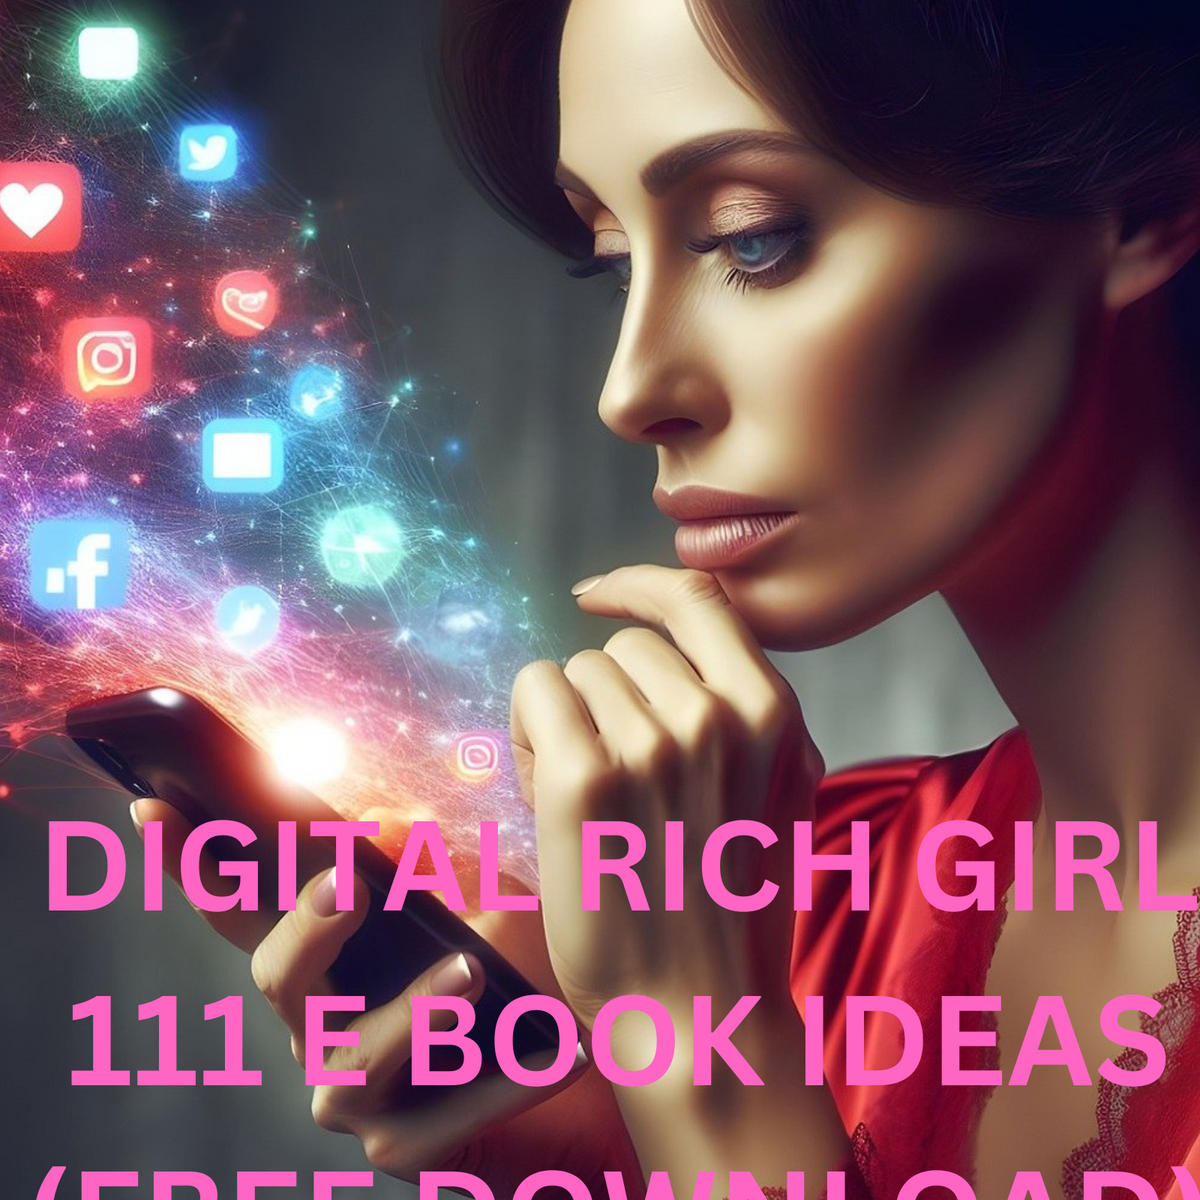 DIGITAL RICH GIRLS 111 EBOOK IDEAS